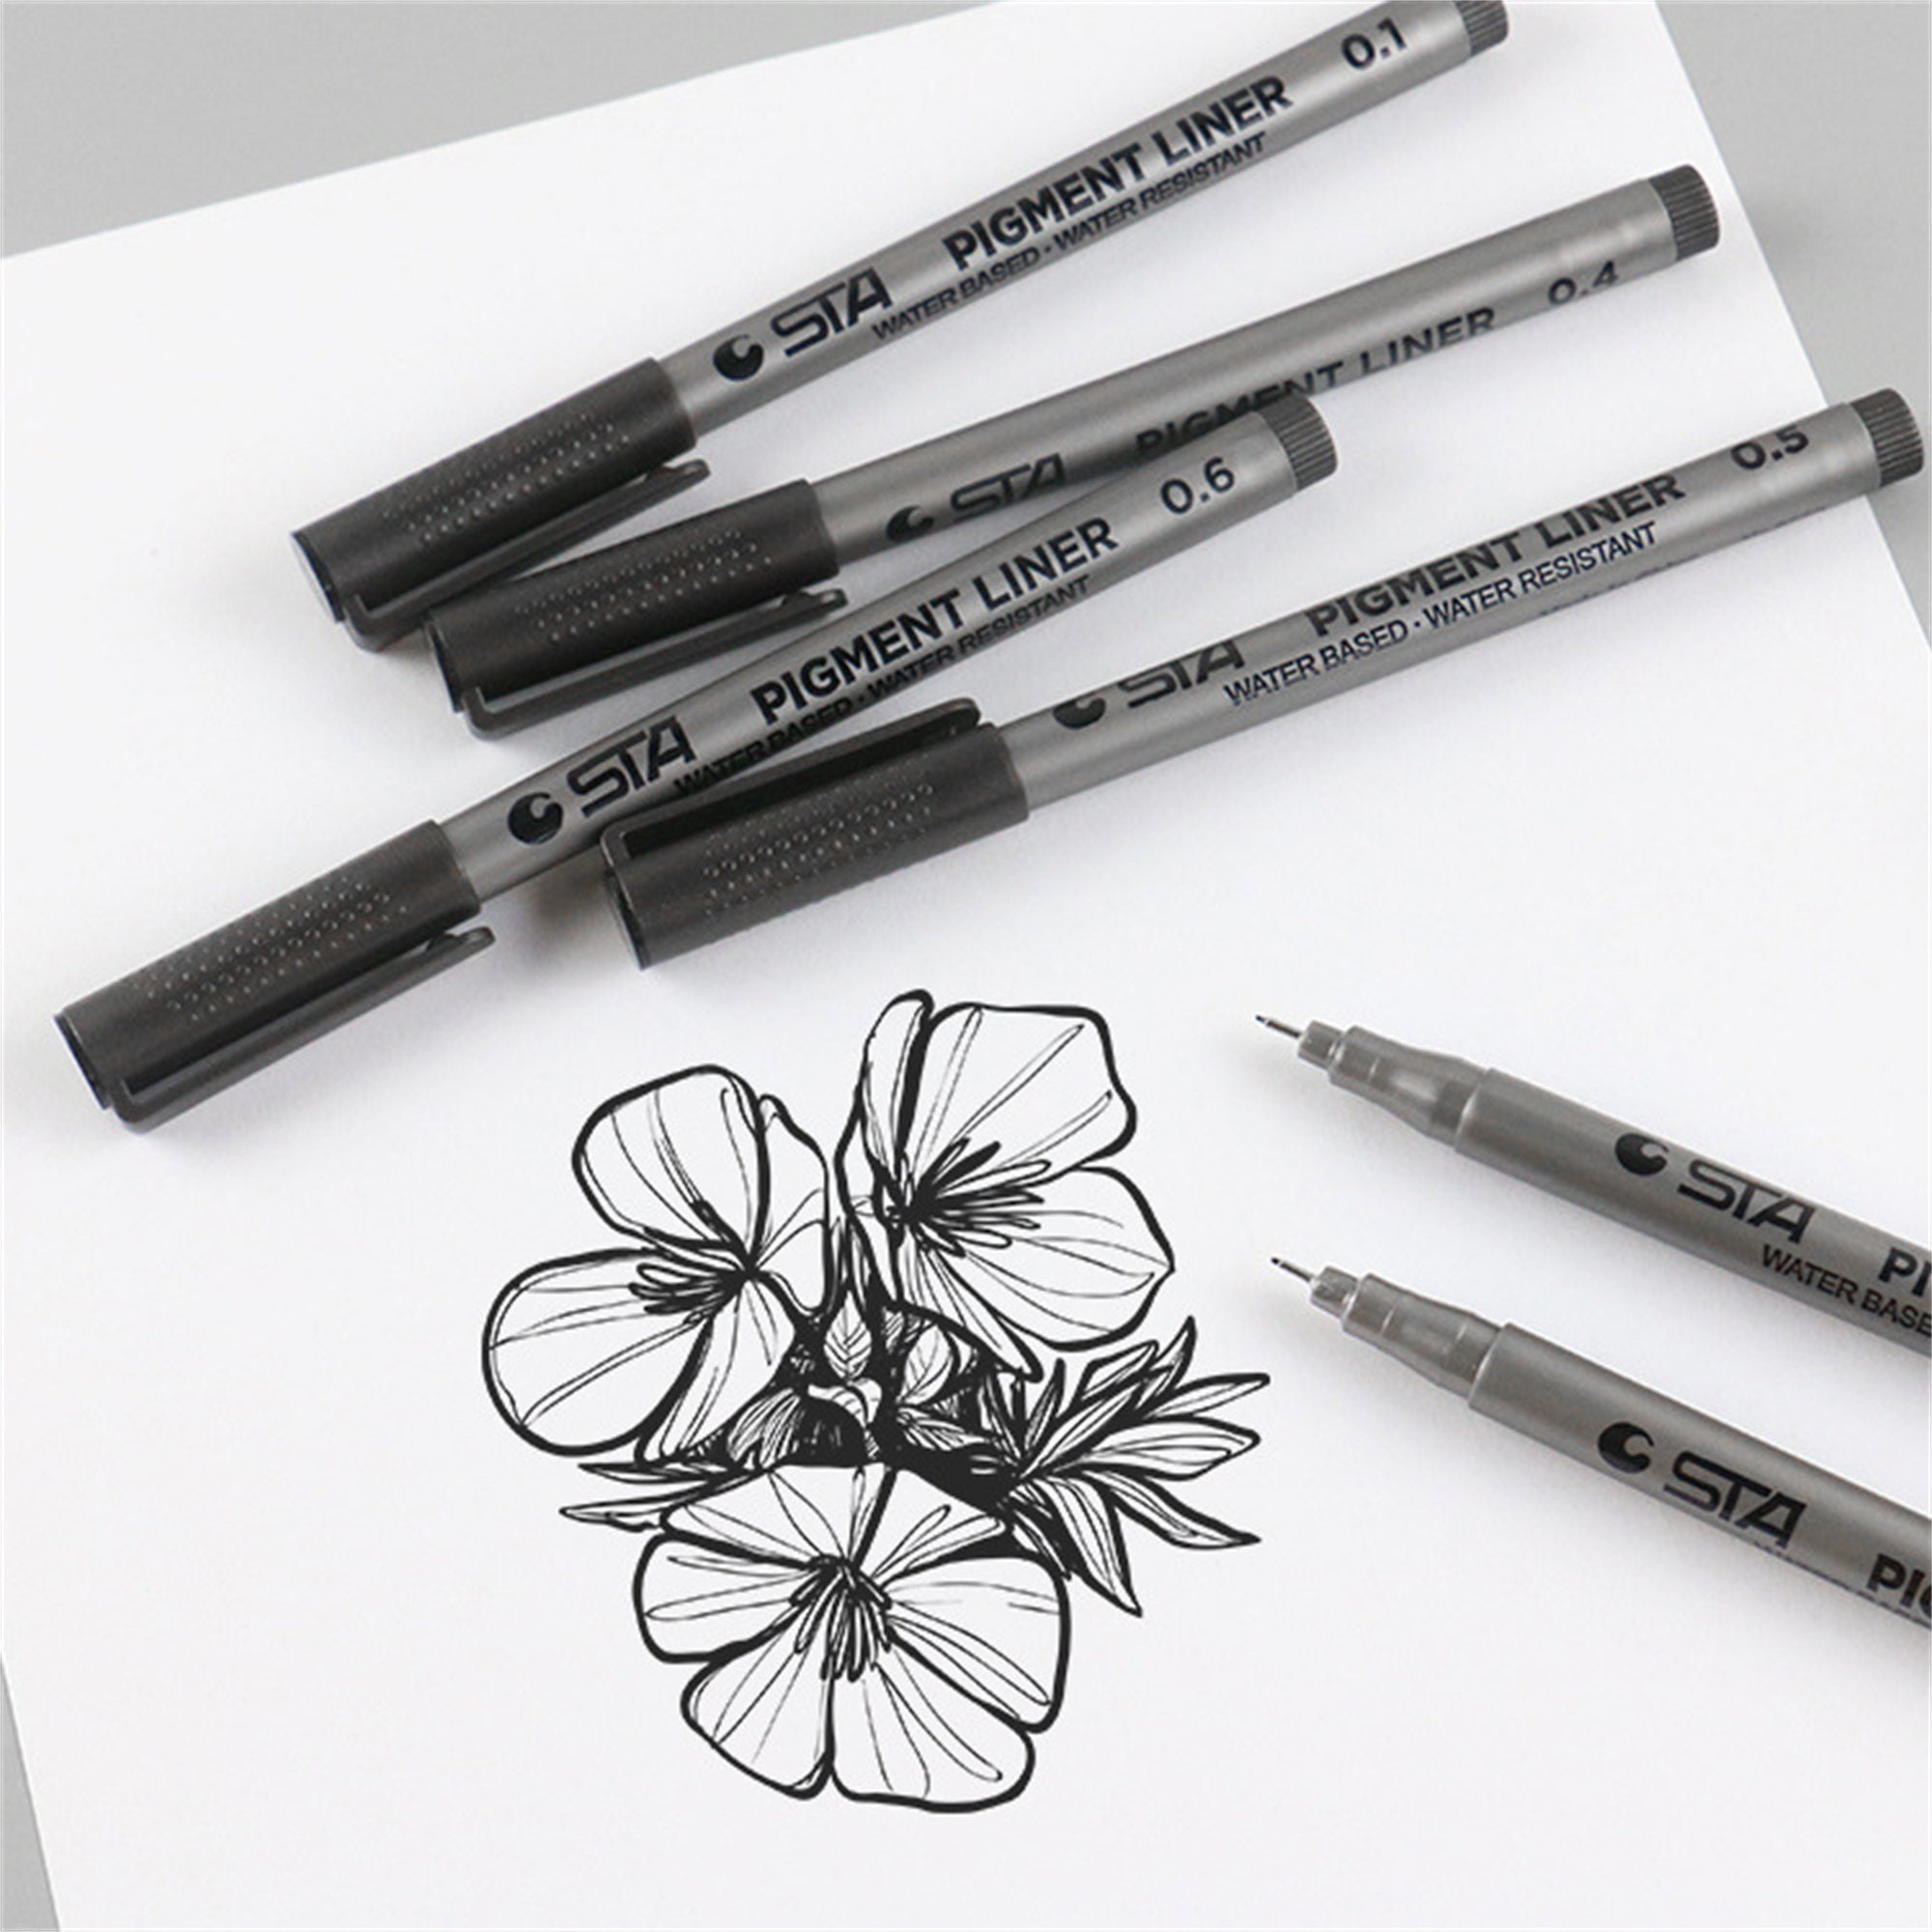 Fineliner Pens Set of 9 Waterproof Micro-pens Drawing Pens 